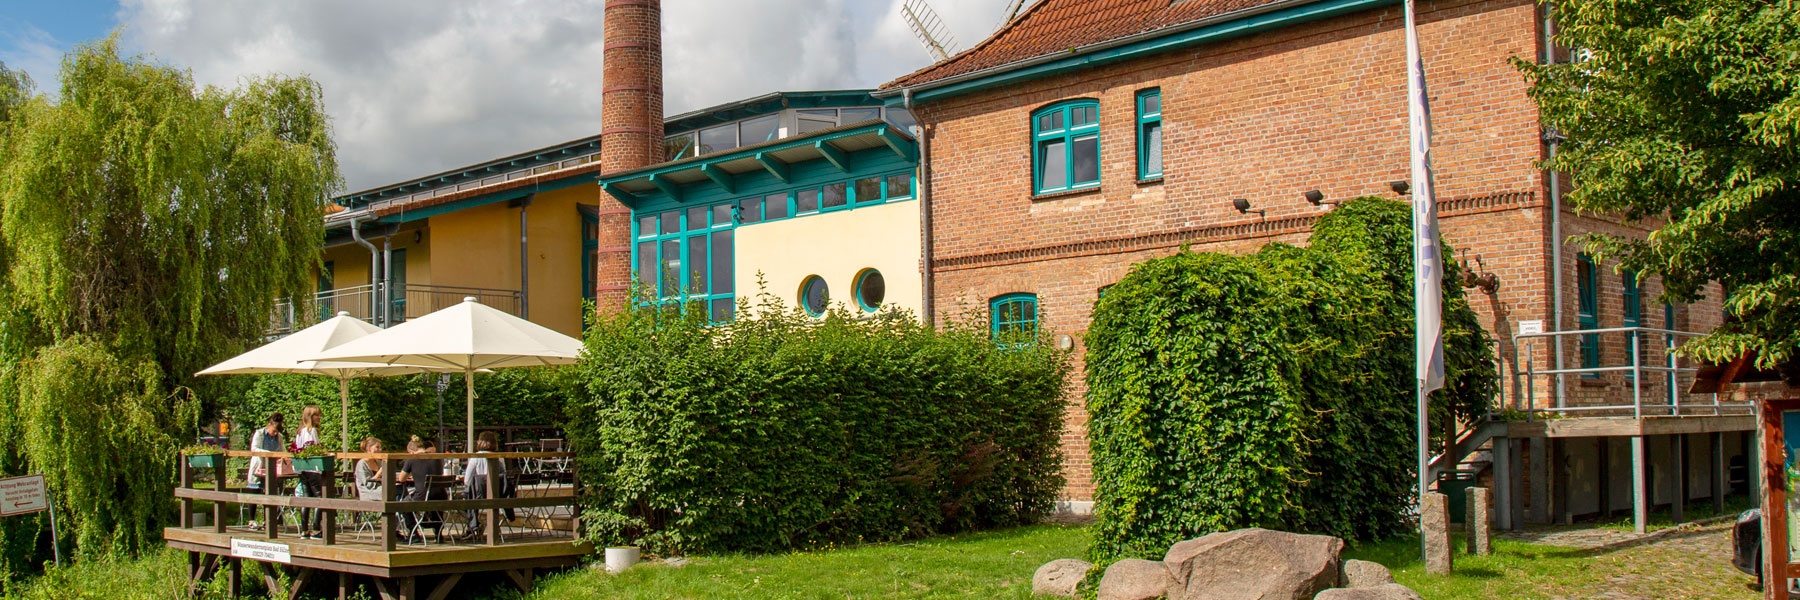 Terrasse - Gästehaus Mühlenstein